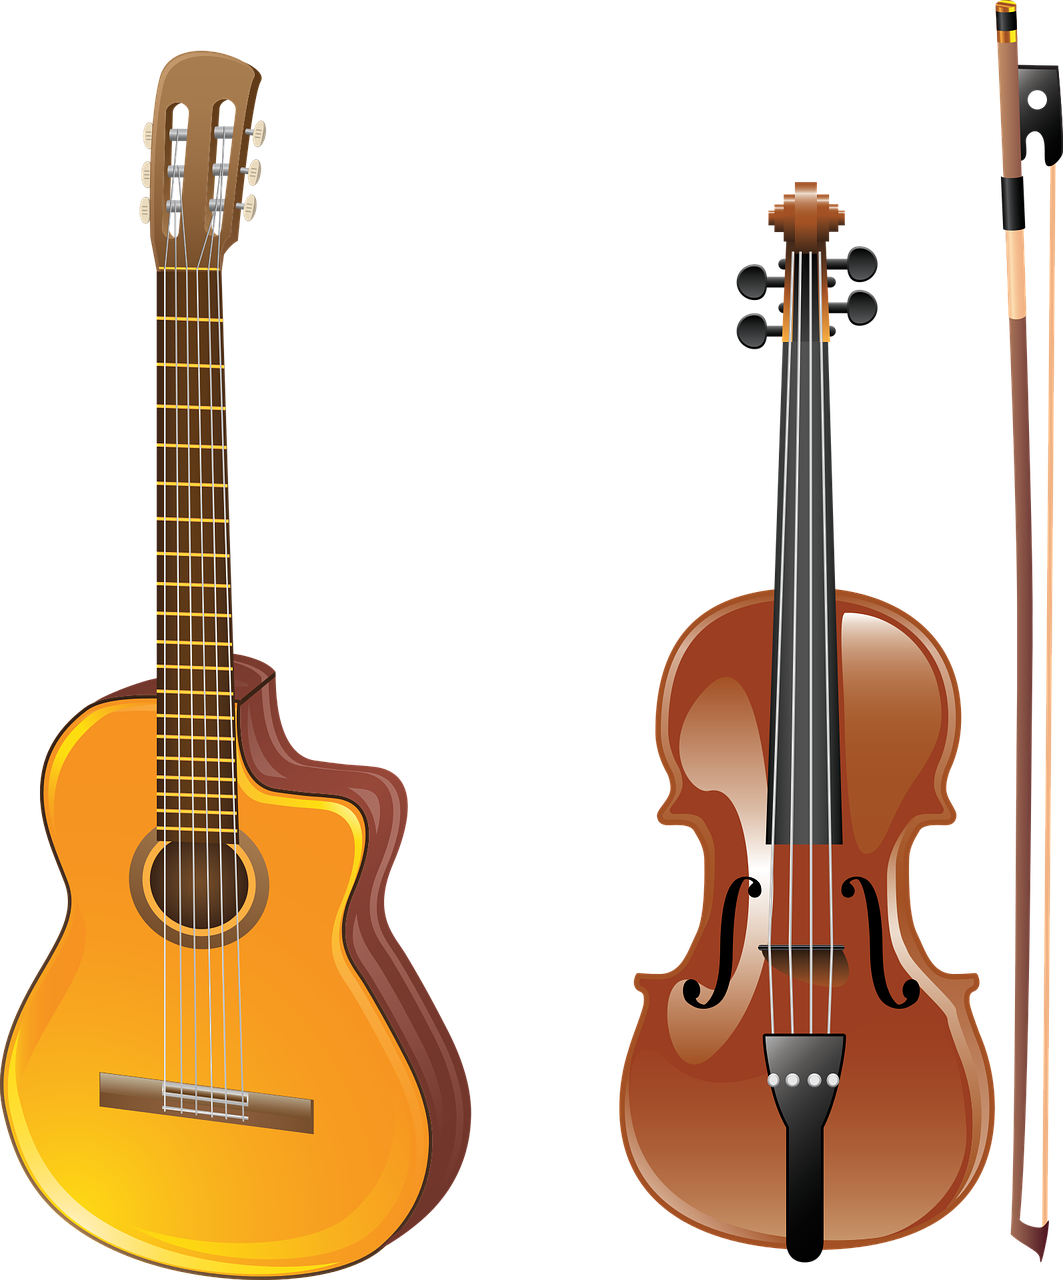 Guitarand Violin Comparison